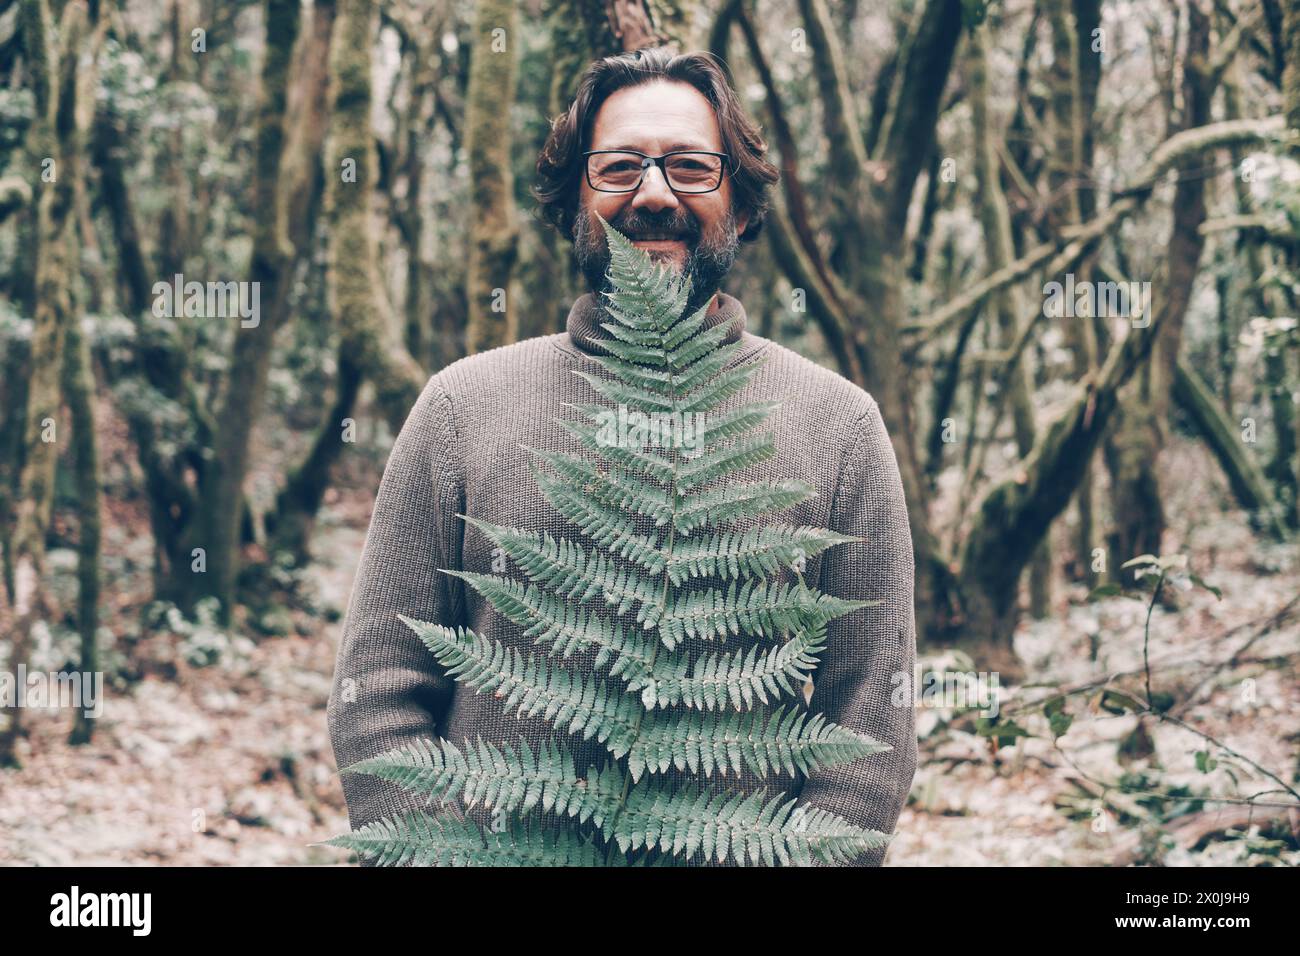 Un uomo maturo sorride e guarda la macchina fotografica con grandi foglie tropicali verdi e foresta di alberi sullo sfondo. Persone e natura nelle attività ricreative all'aperto. Stile di vita bio sano alternativo. Ambiente Foto Stock